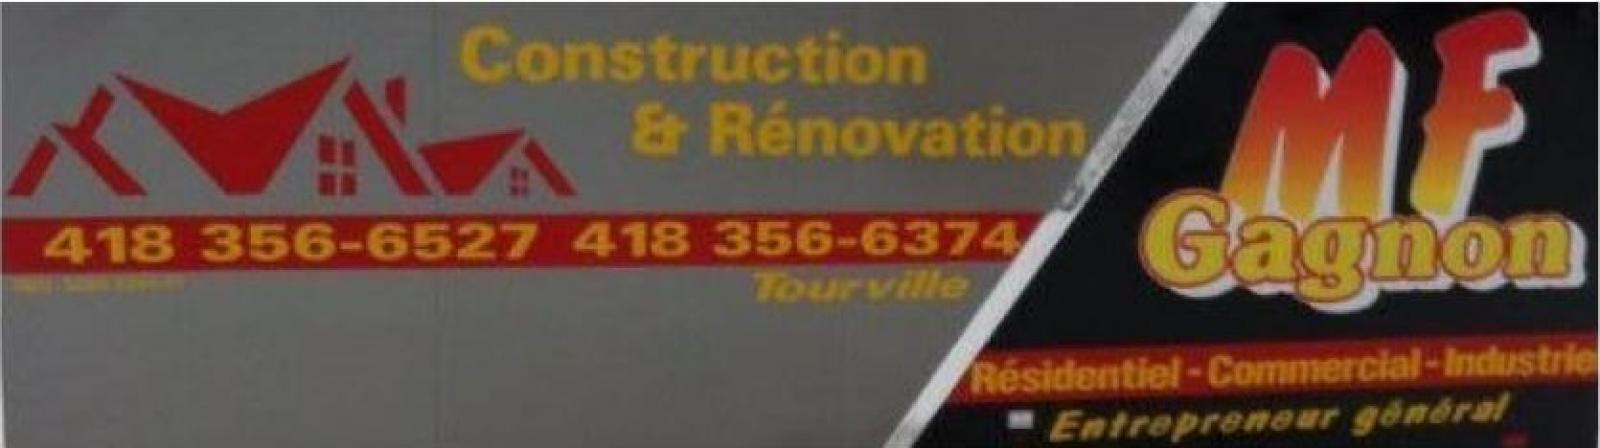 MF Gagnon Construction, Rénovation, Toiture Tourville Logo